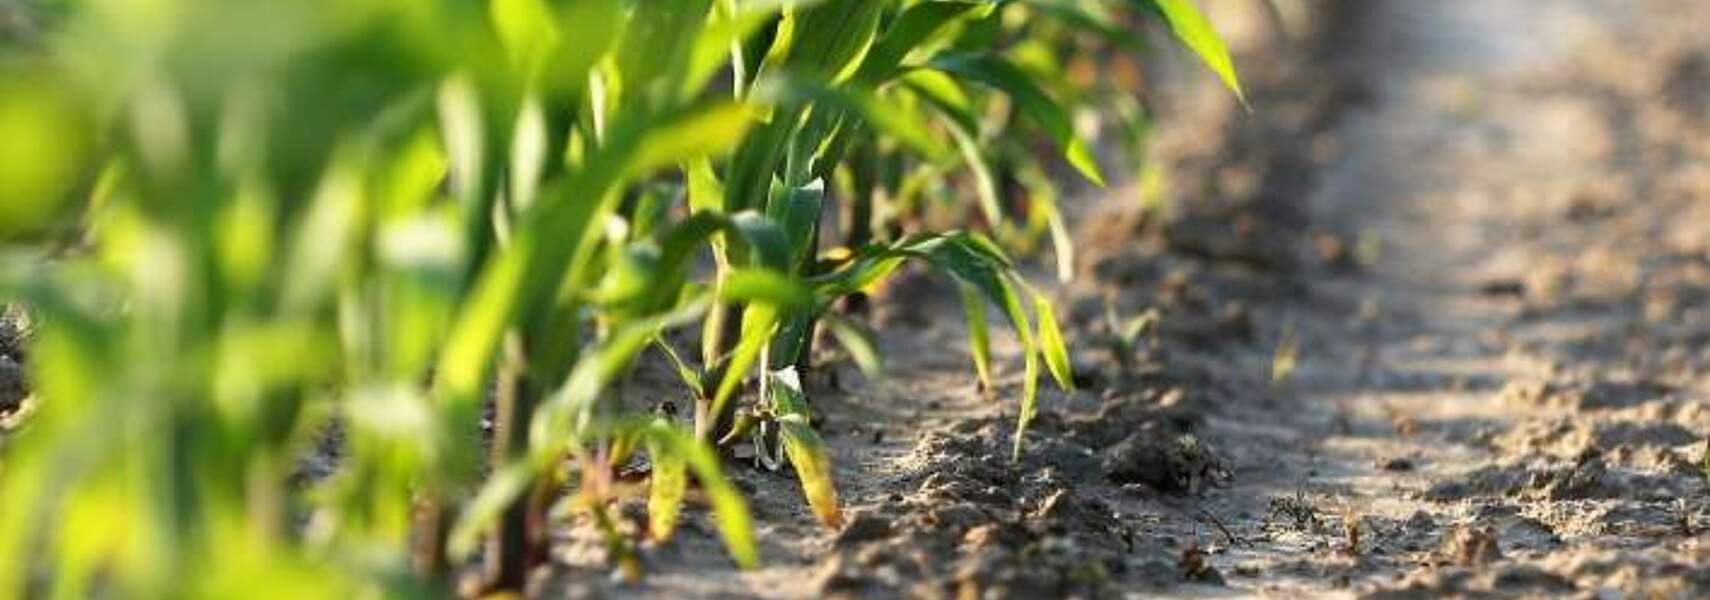 Bioenergie: Ein aktiver Beitrag der Landwirtschaft zum Klimaschutz